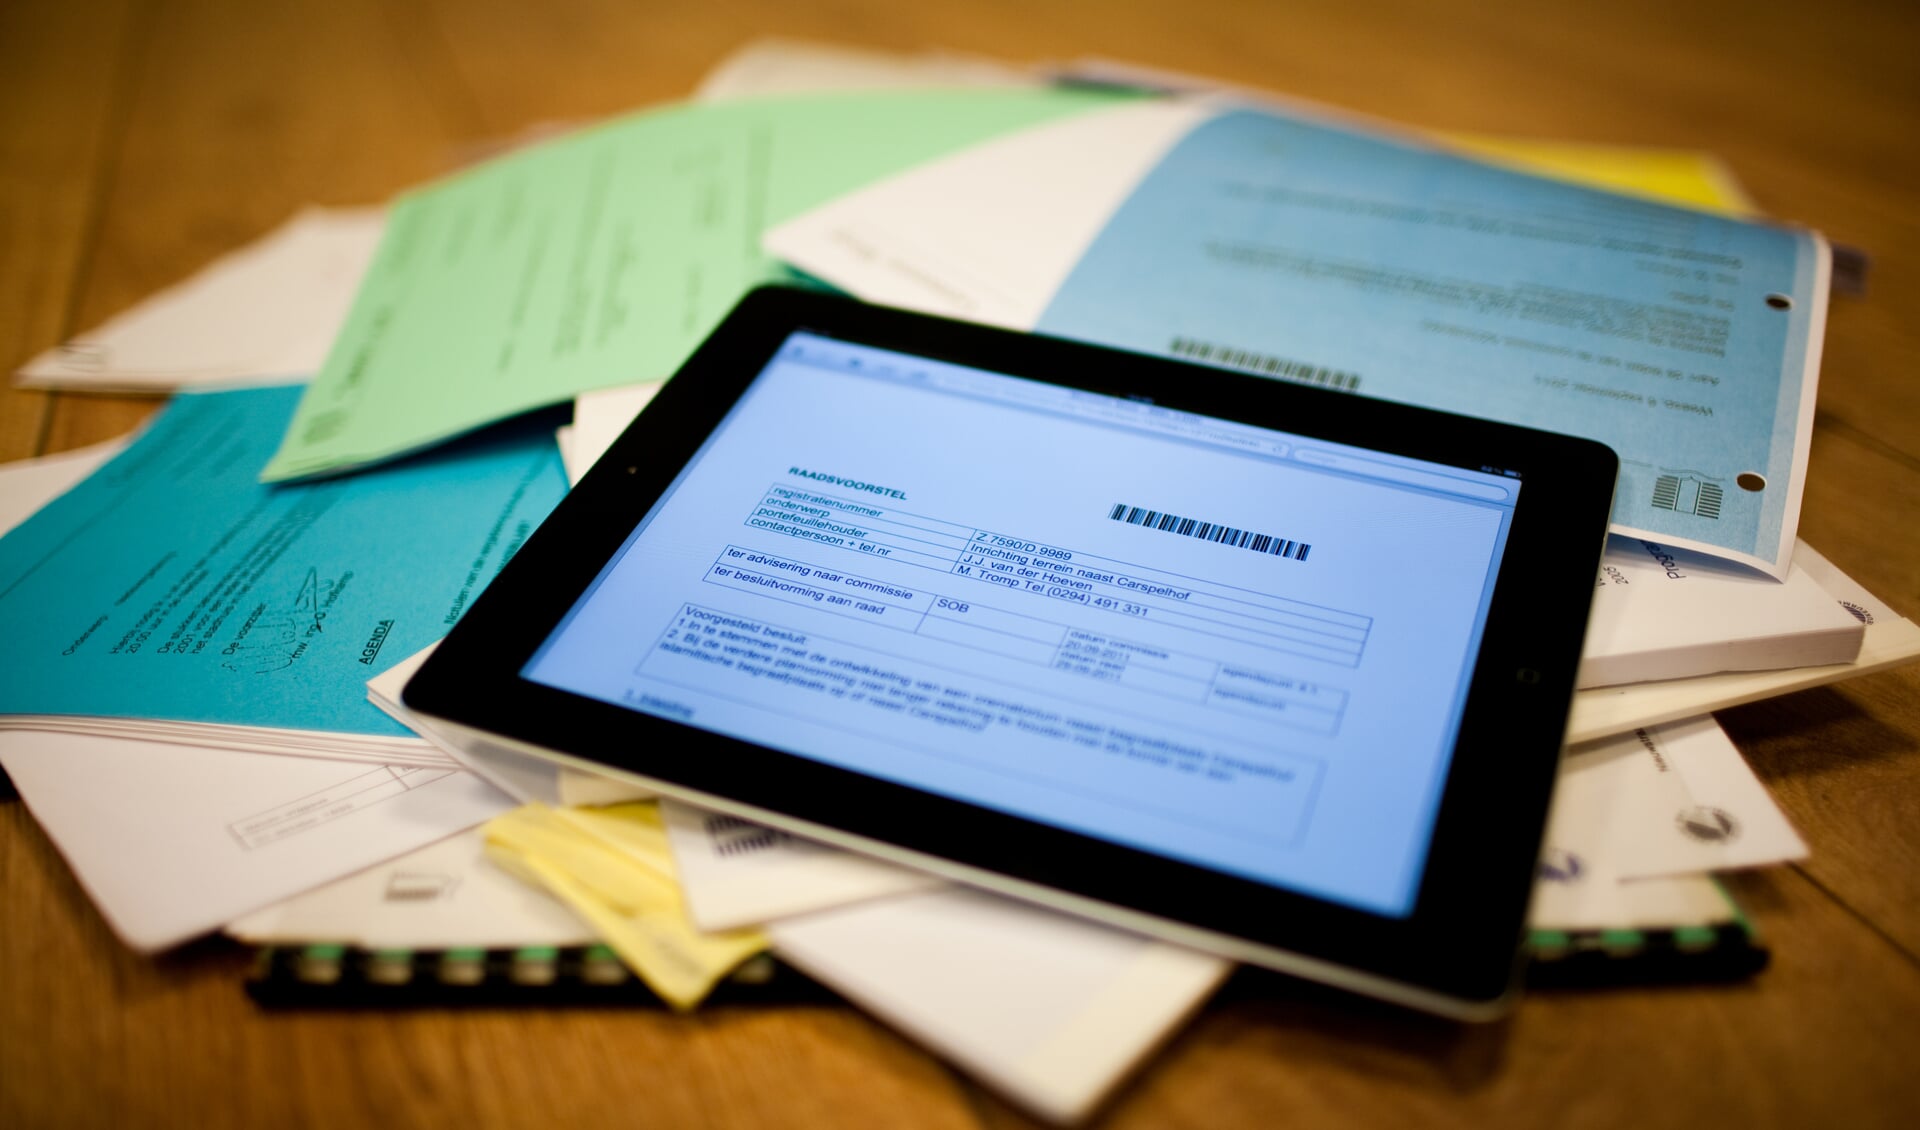 De iPad gaat alle honderden raadsstukken vervangen. De papierstapel past in één pdf.